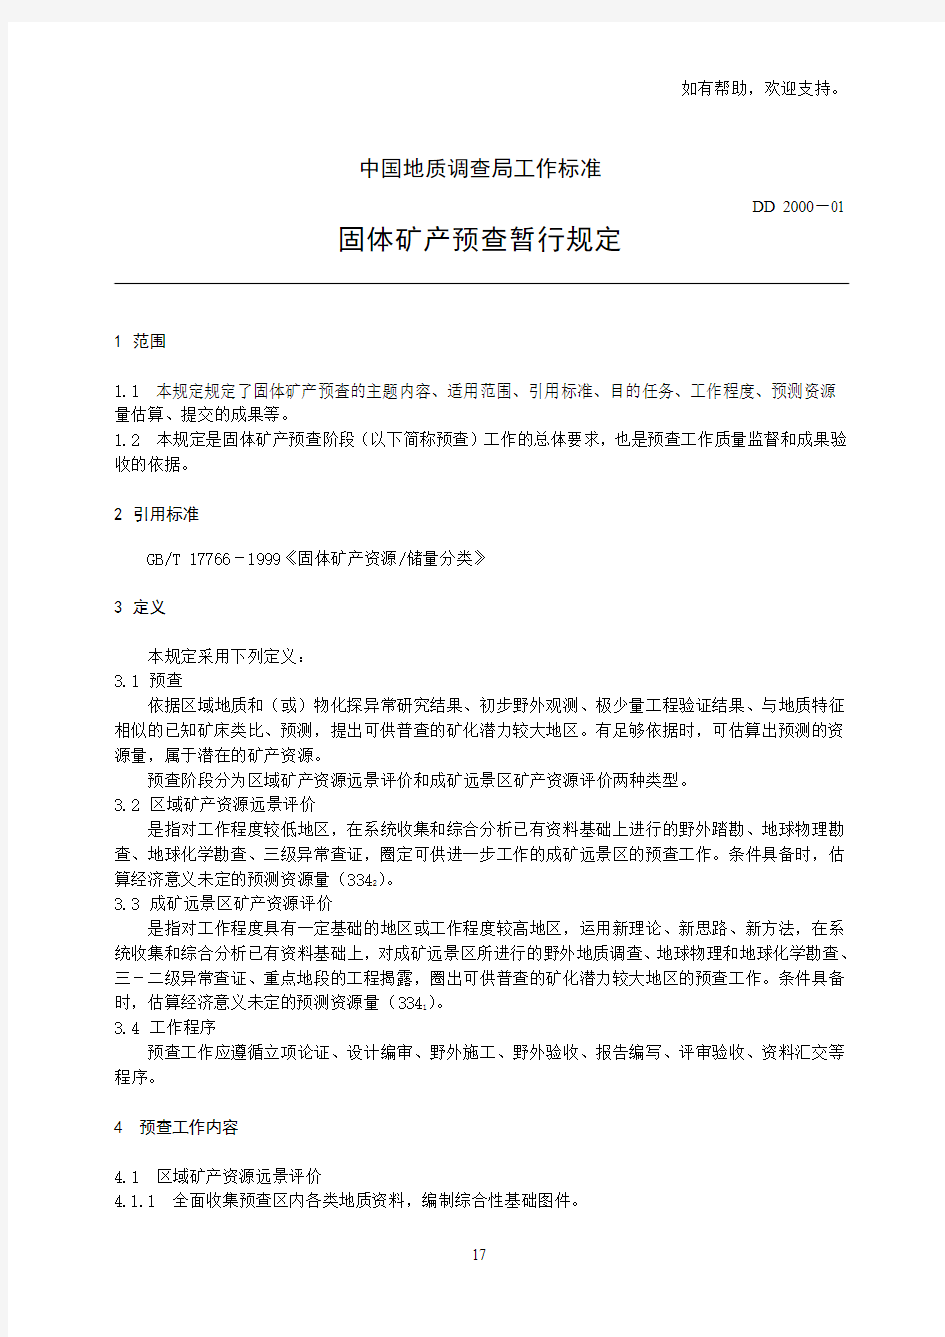 中国地质调查局工作标准(IV)